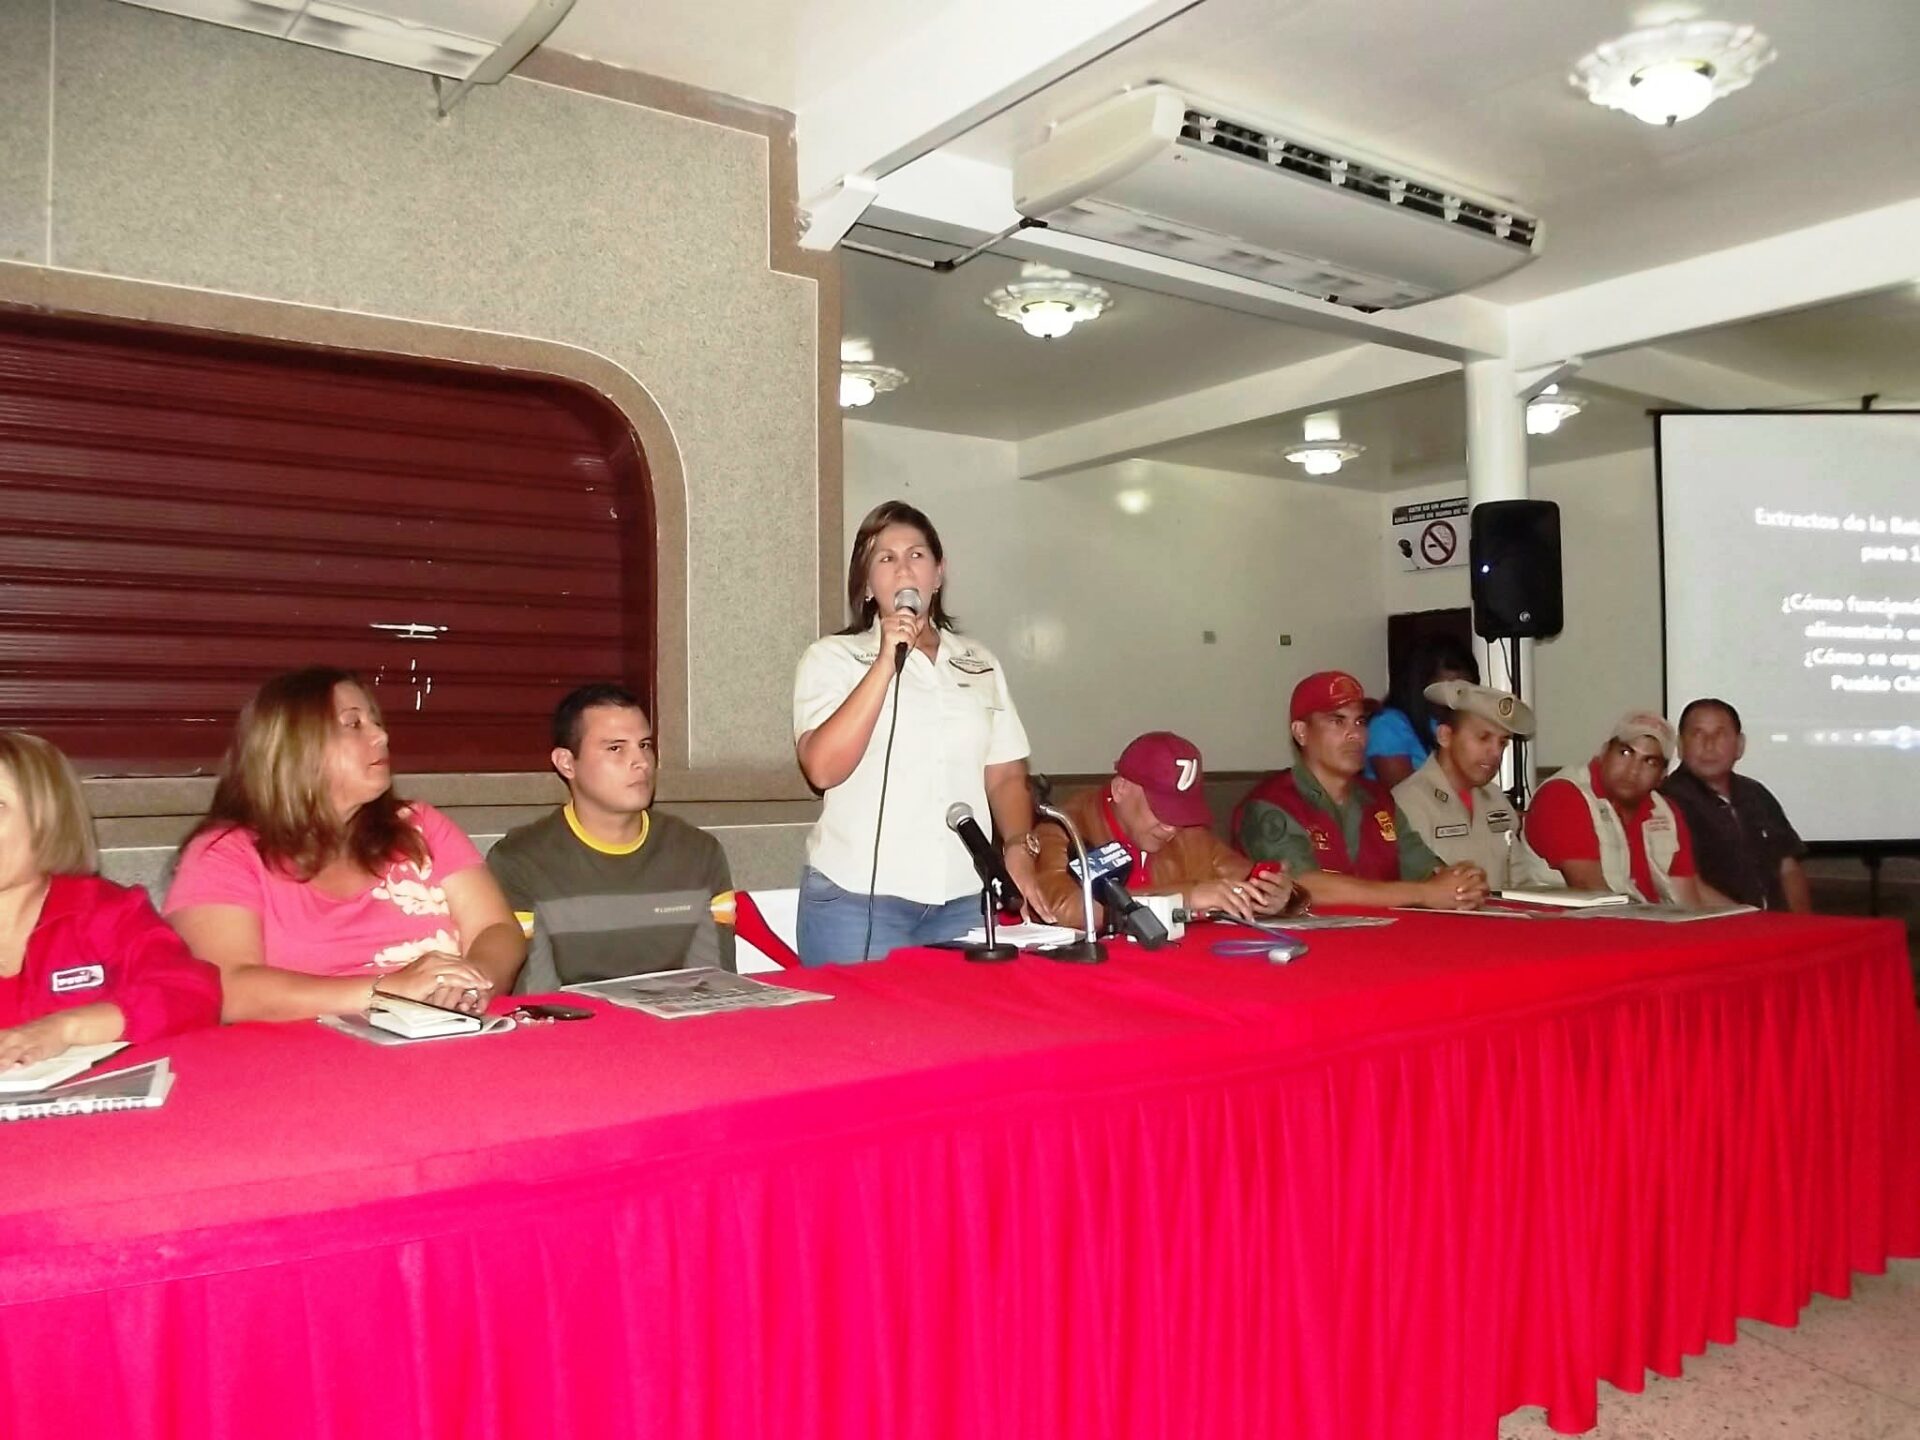 Más de 1.180 representantes del pueblo organizado estarán desplegados este fin de semana, anunció la alcaldesa Noguera